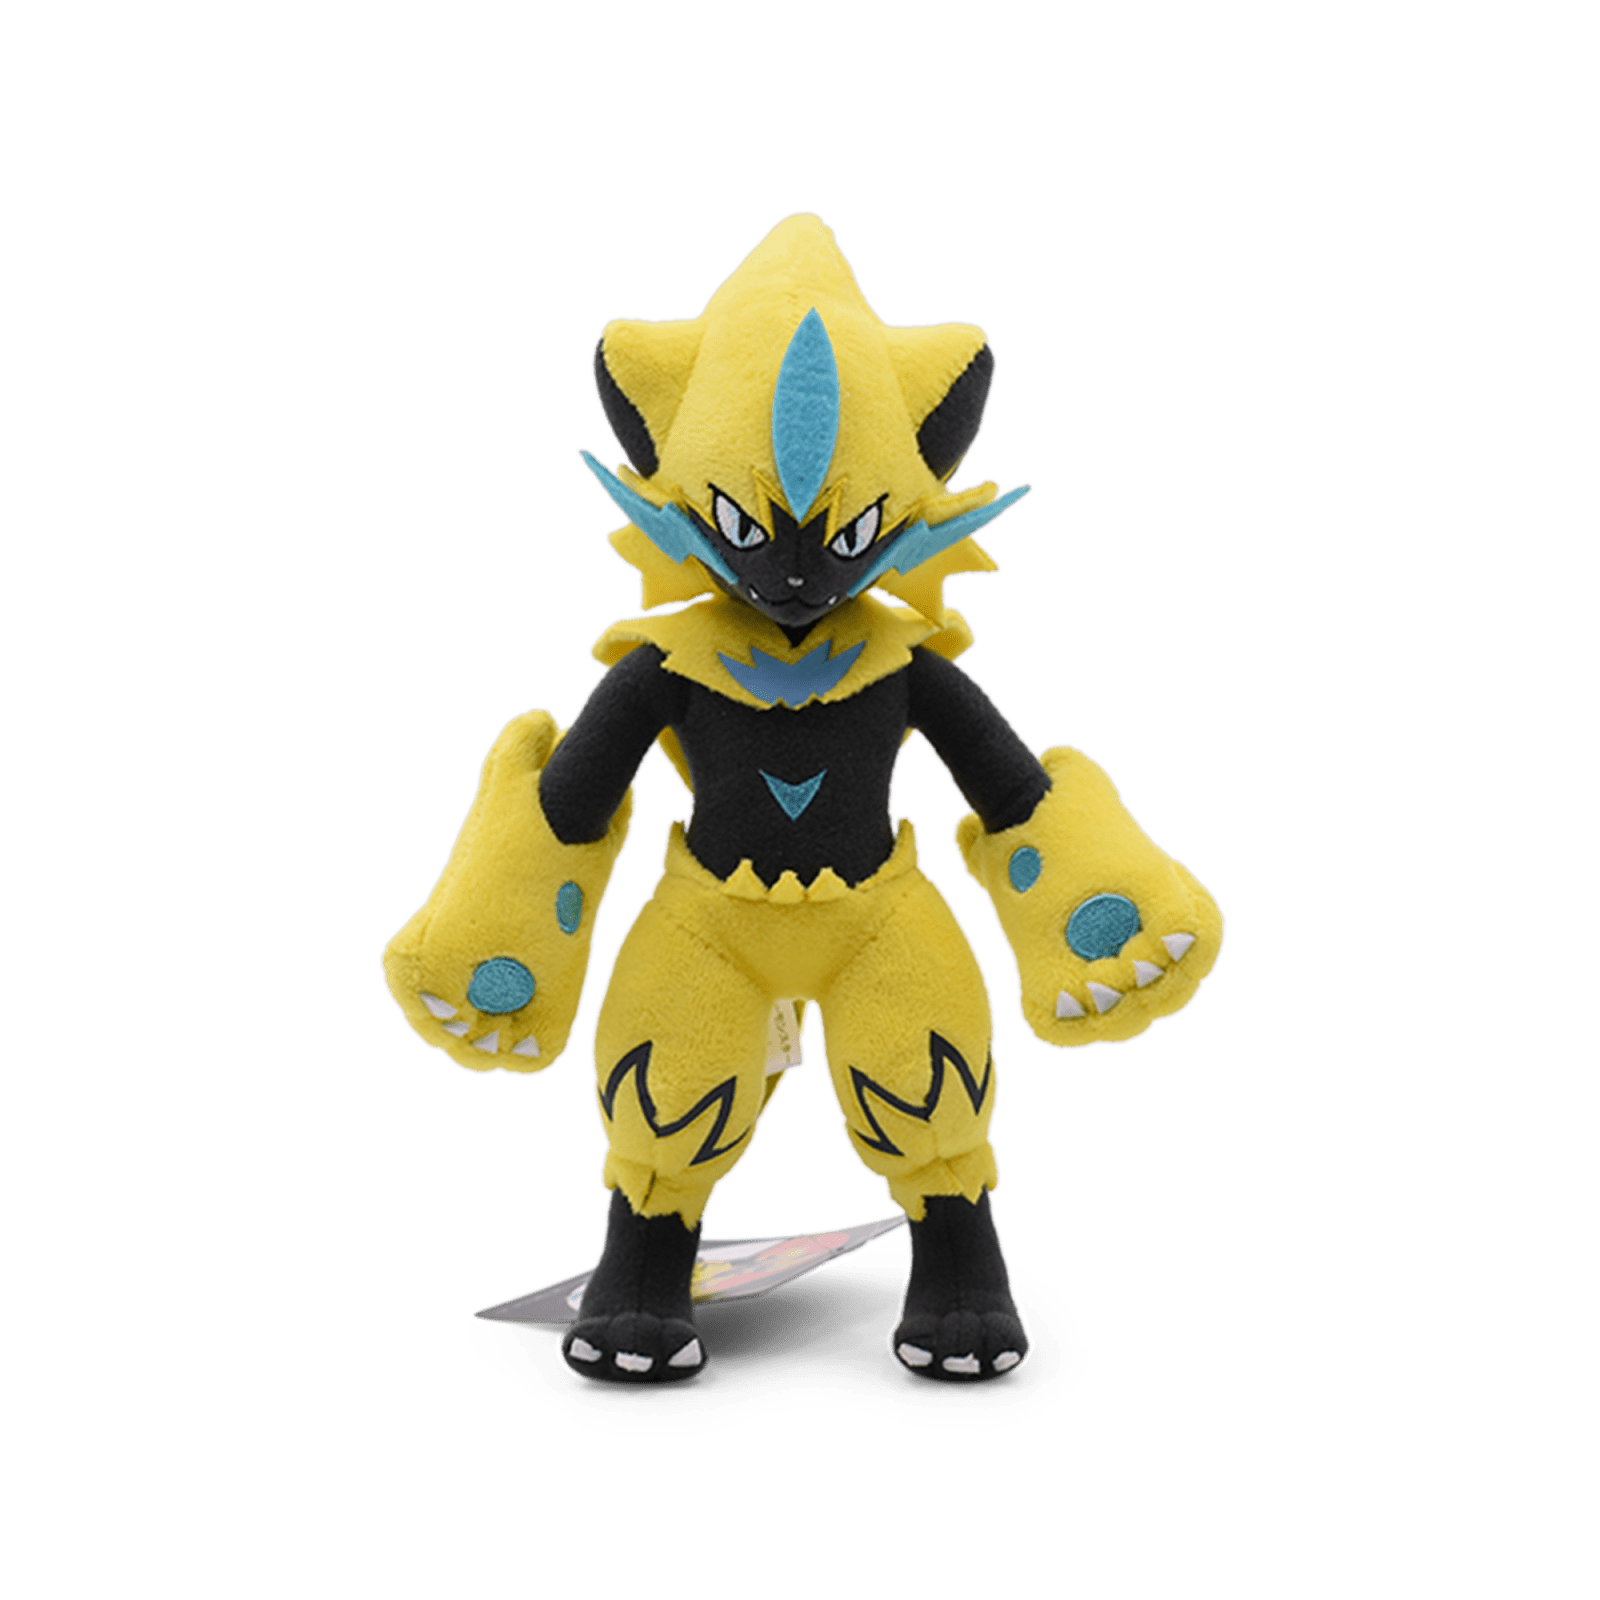 Pokemon Sun and Moon Zeraora Plush Toy Stuffed Doll Figure Soft Gift 12 inch NEW 